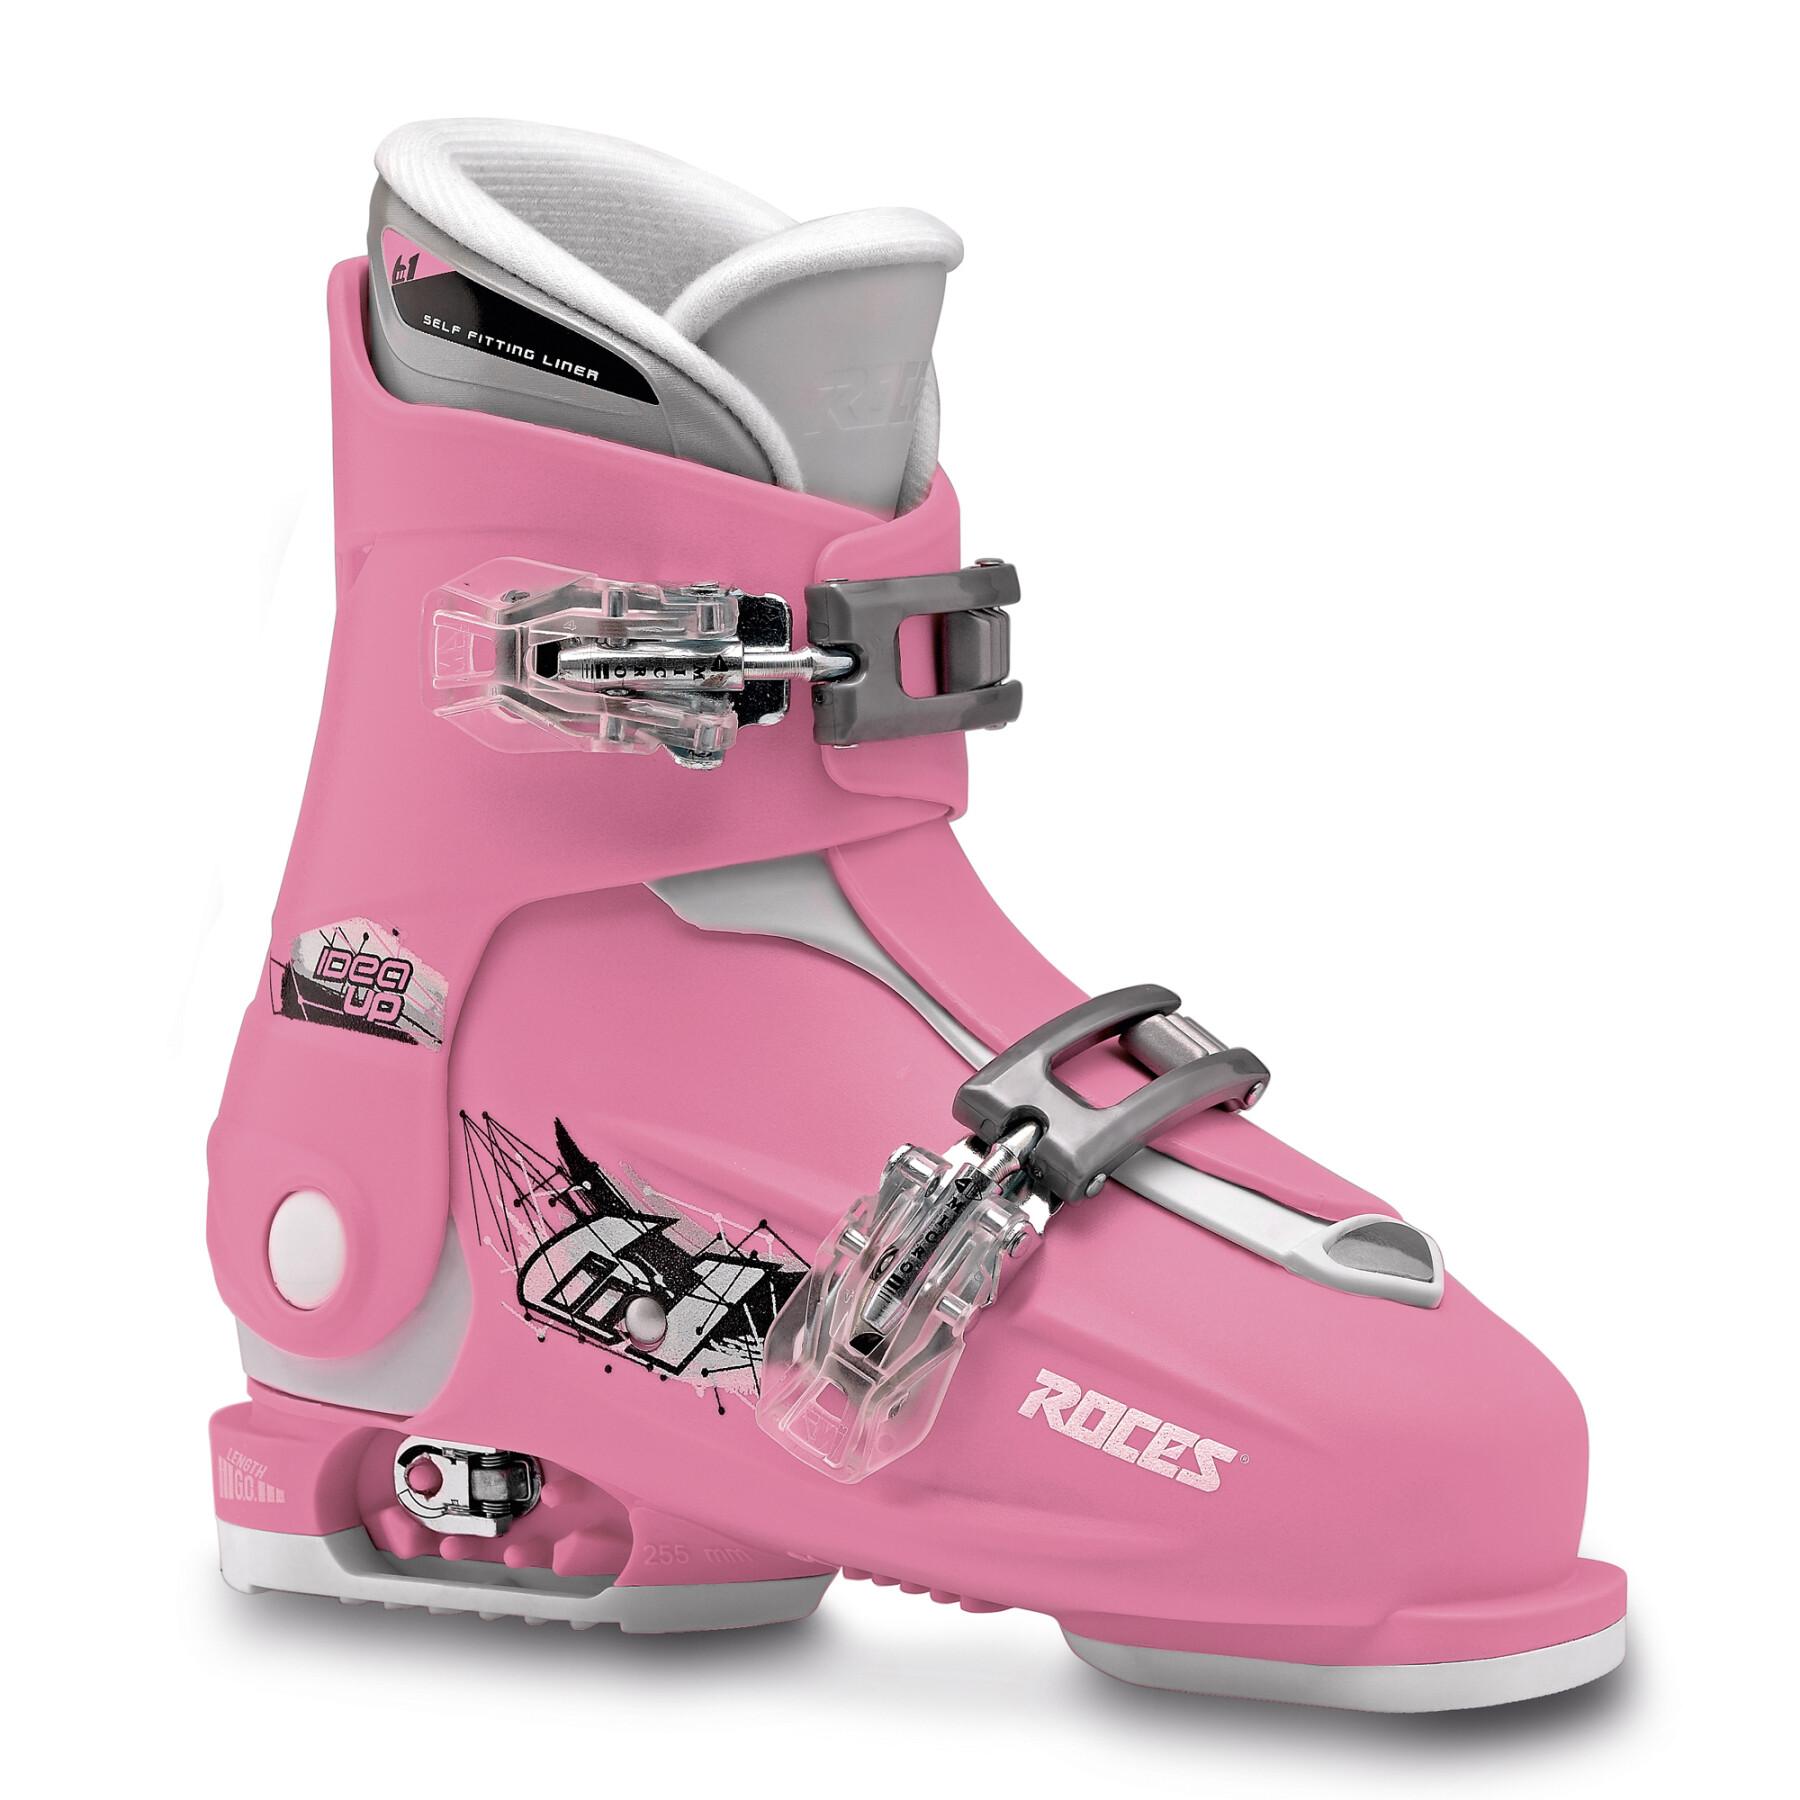 Children's ski boots Roces Idea Up